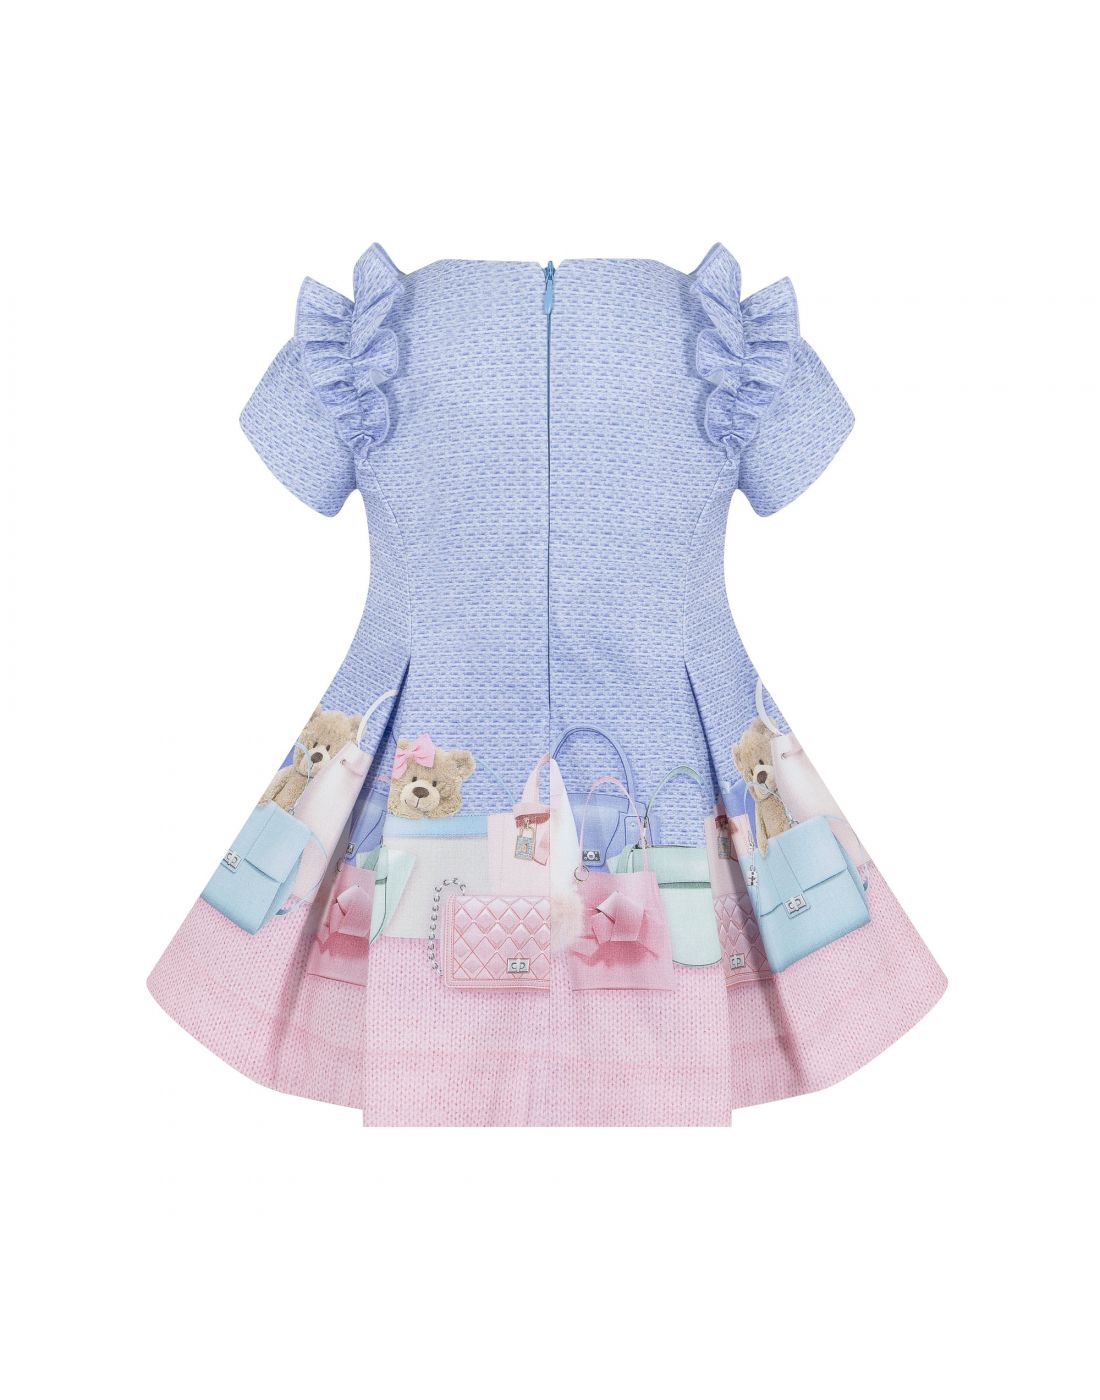 Παιδικό Φόρεμα Lapin House, Lapin House, 232E3256 | LapinKids.com | LAPIN  KIDS